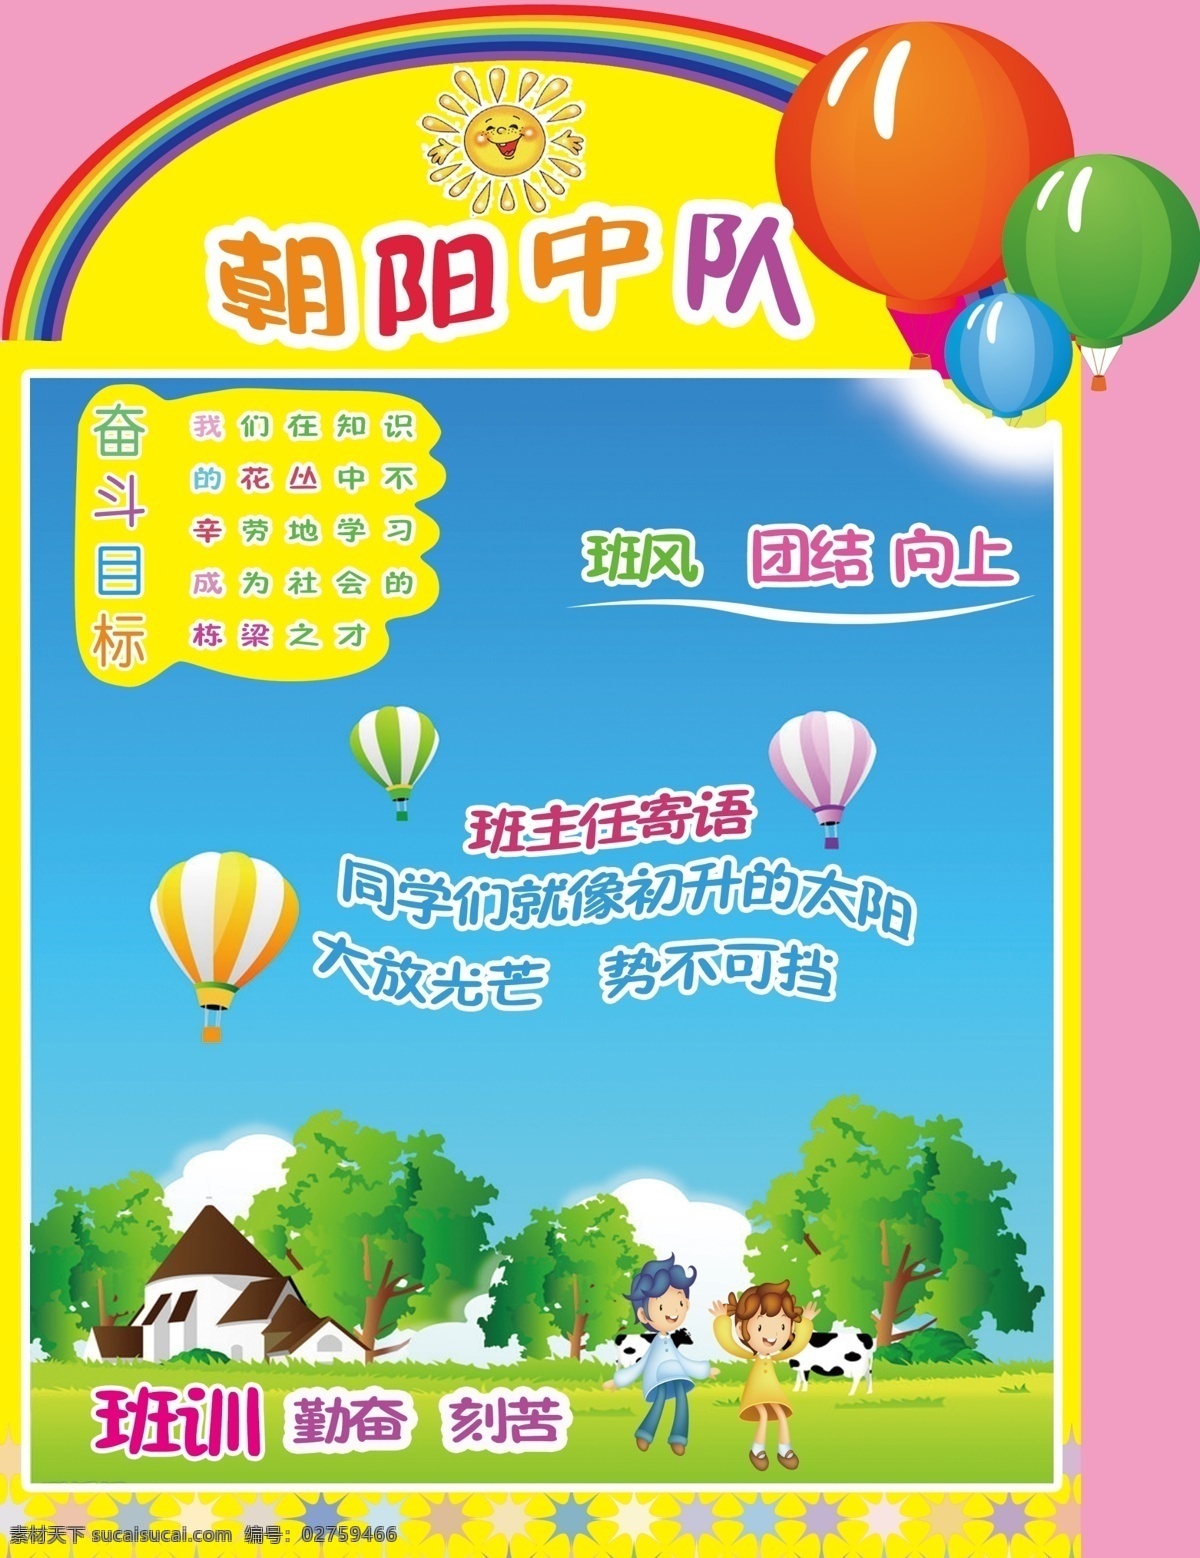 小学生 展板 朝阳 中队 气球 小男孩 小女孩 树 房子 彩虹 奶牛 展板模板 广告设计模板 源文件